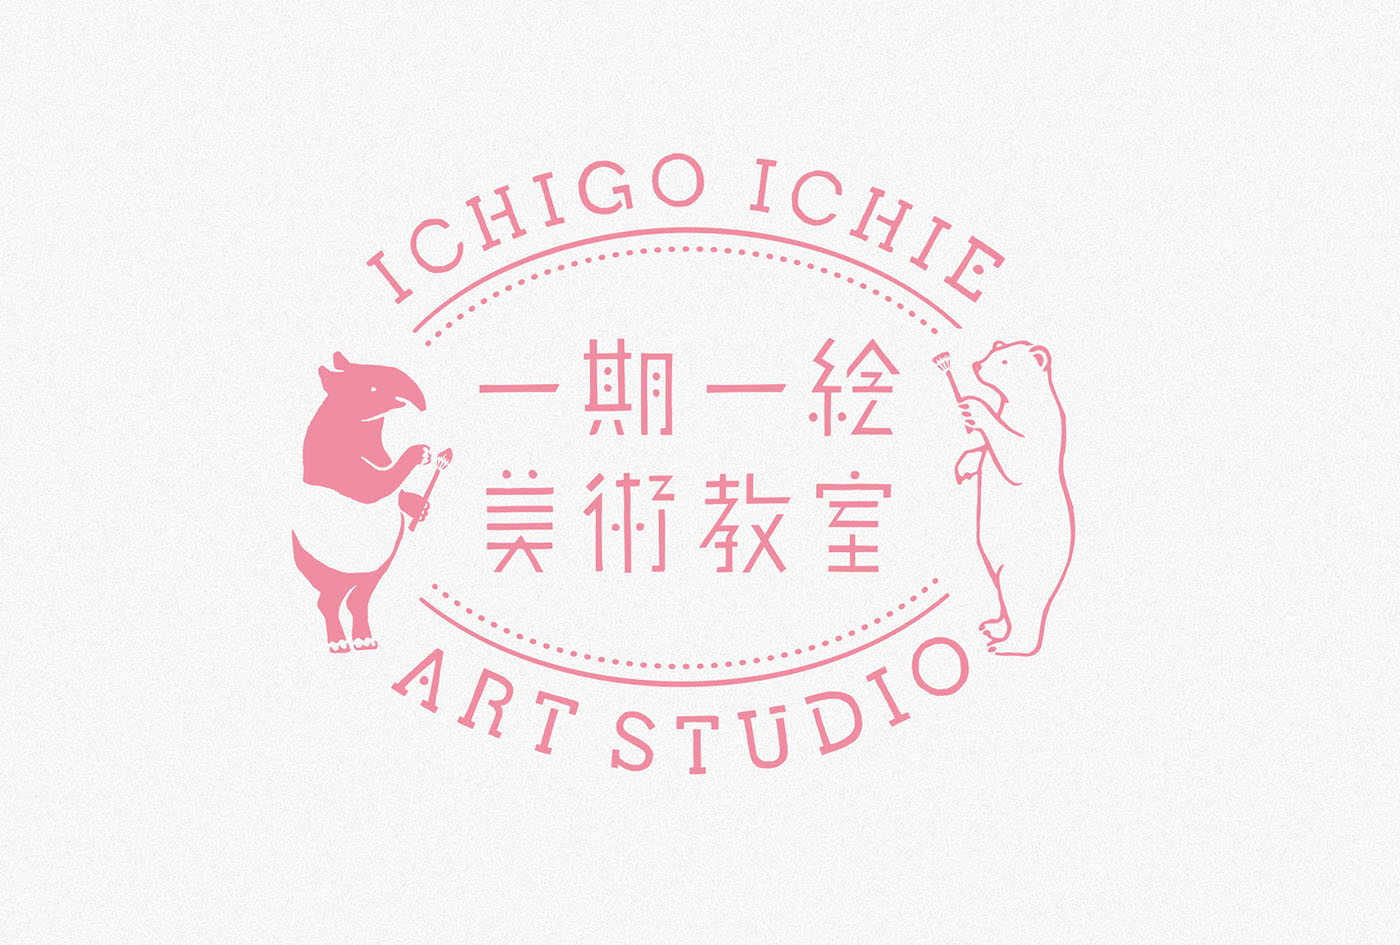 一期一绘美术教室 Ichigo Ichie Art Studio 品牌形象设计